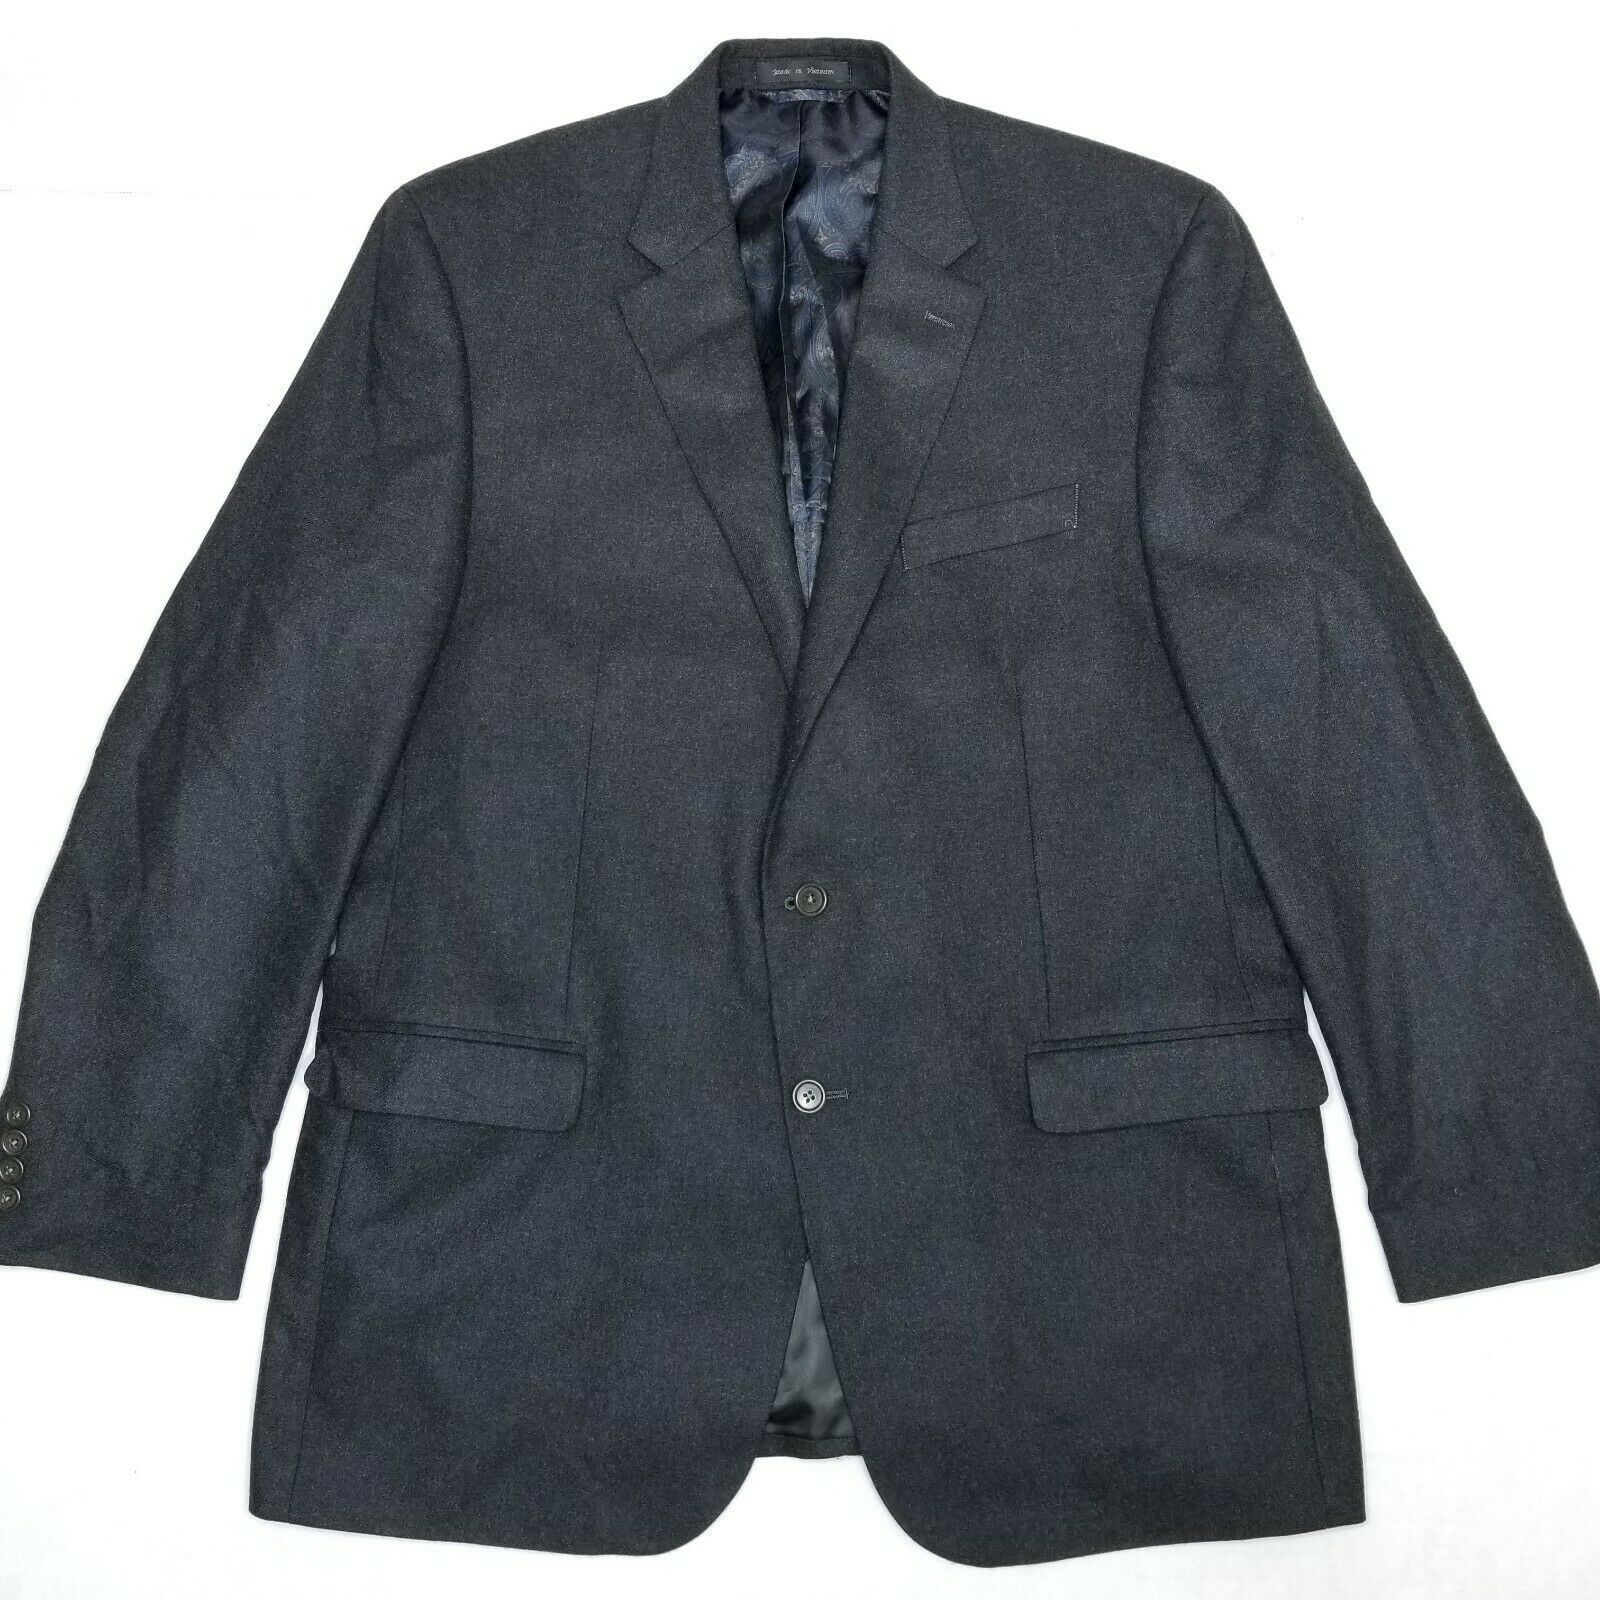 Lauren Ralph Lauren Wool cashmere blend 2 button sport coat Charcoal Gray - $79.20